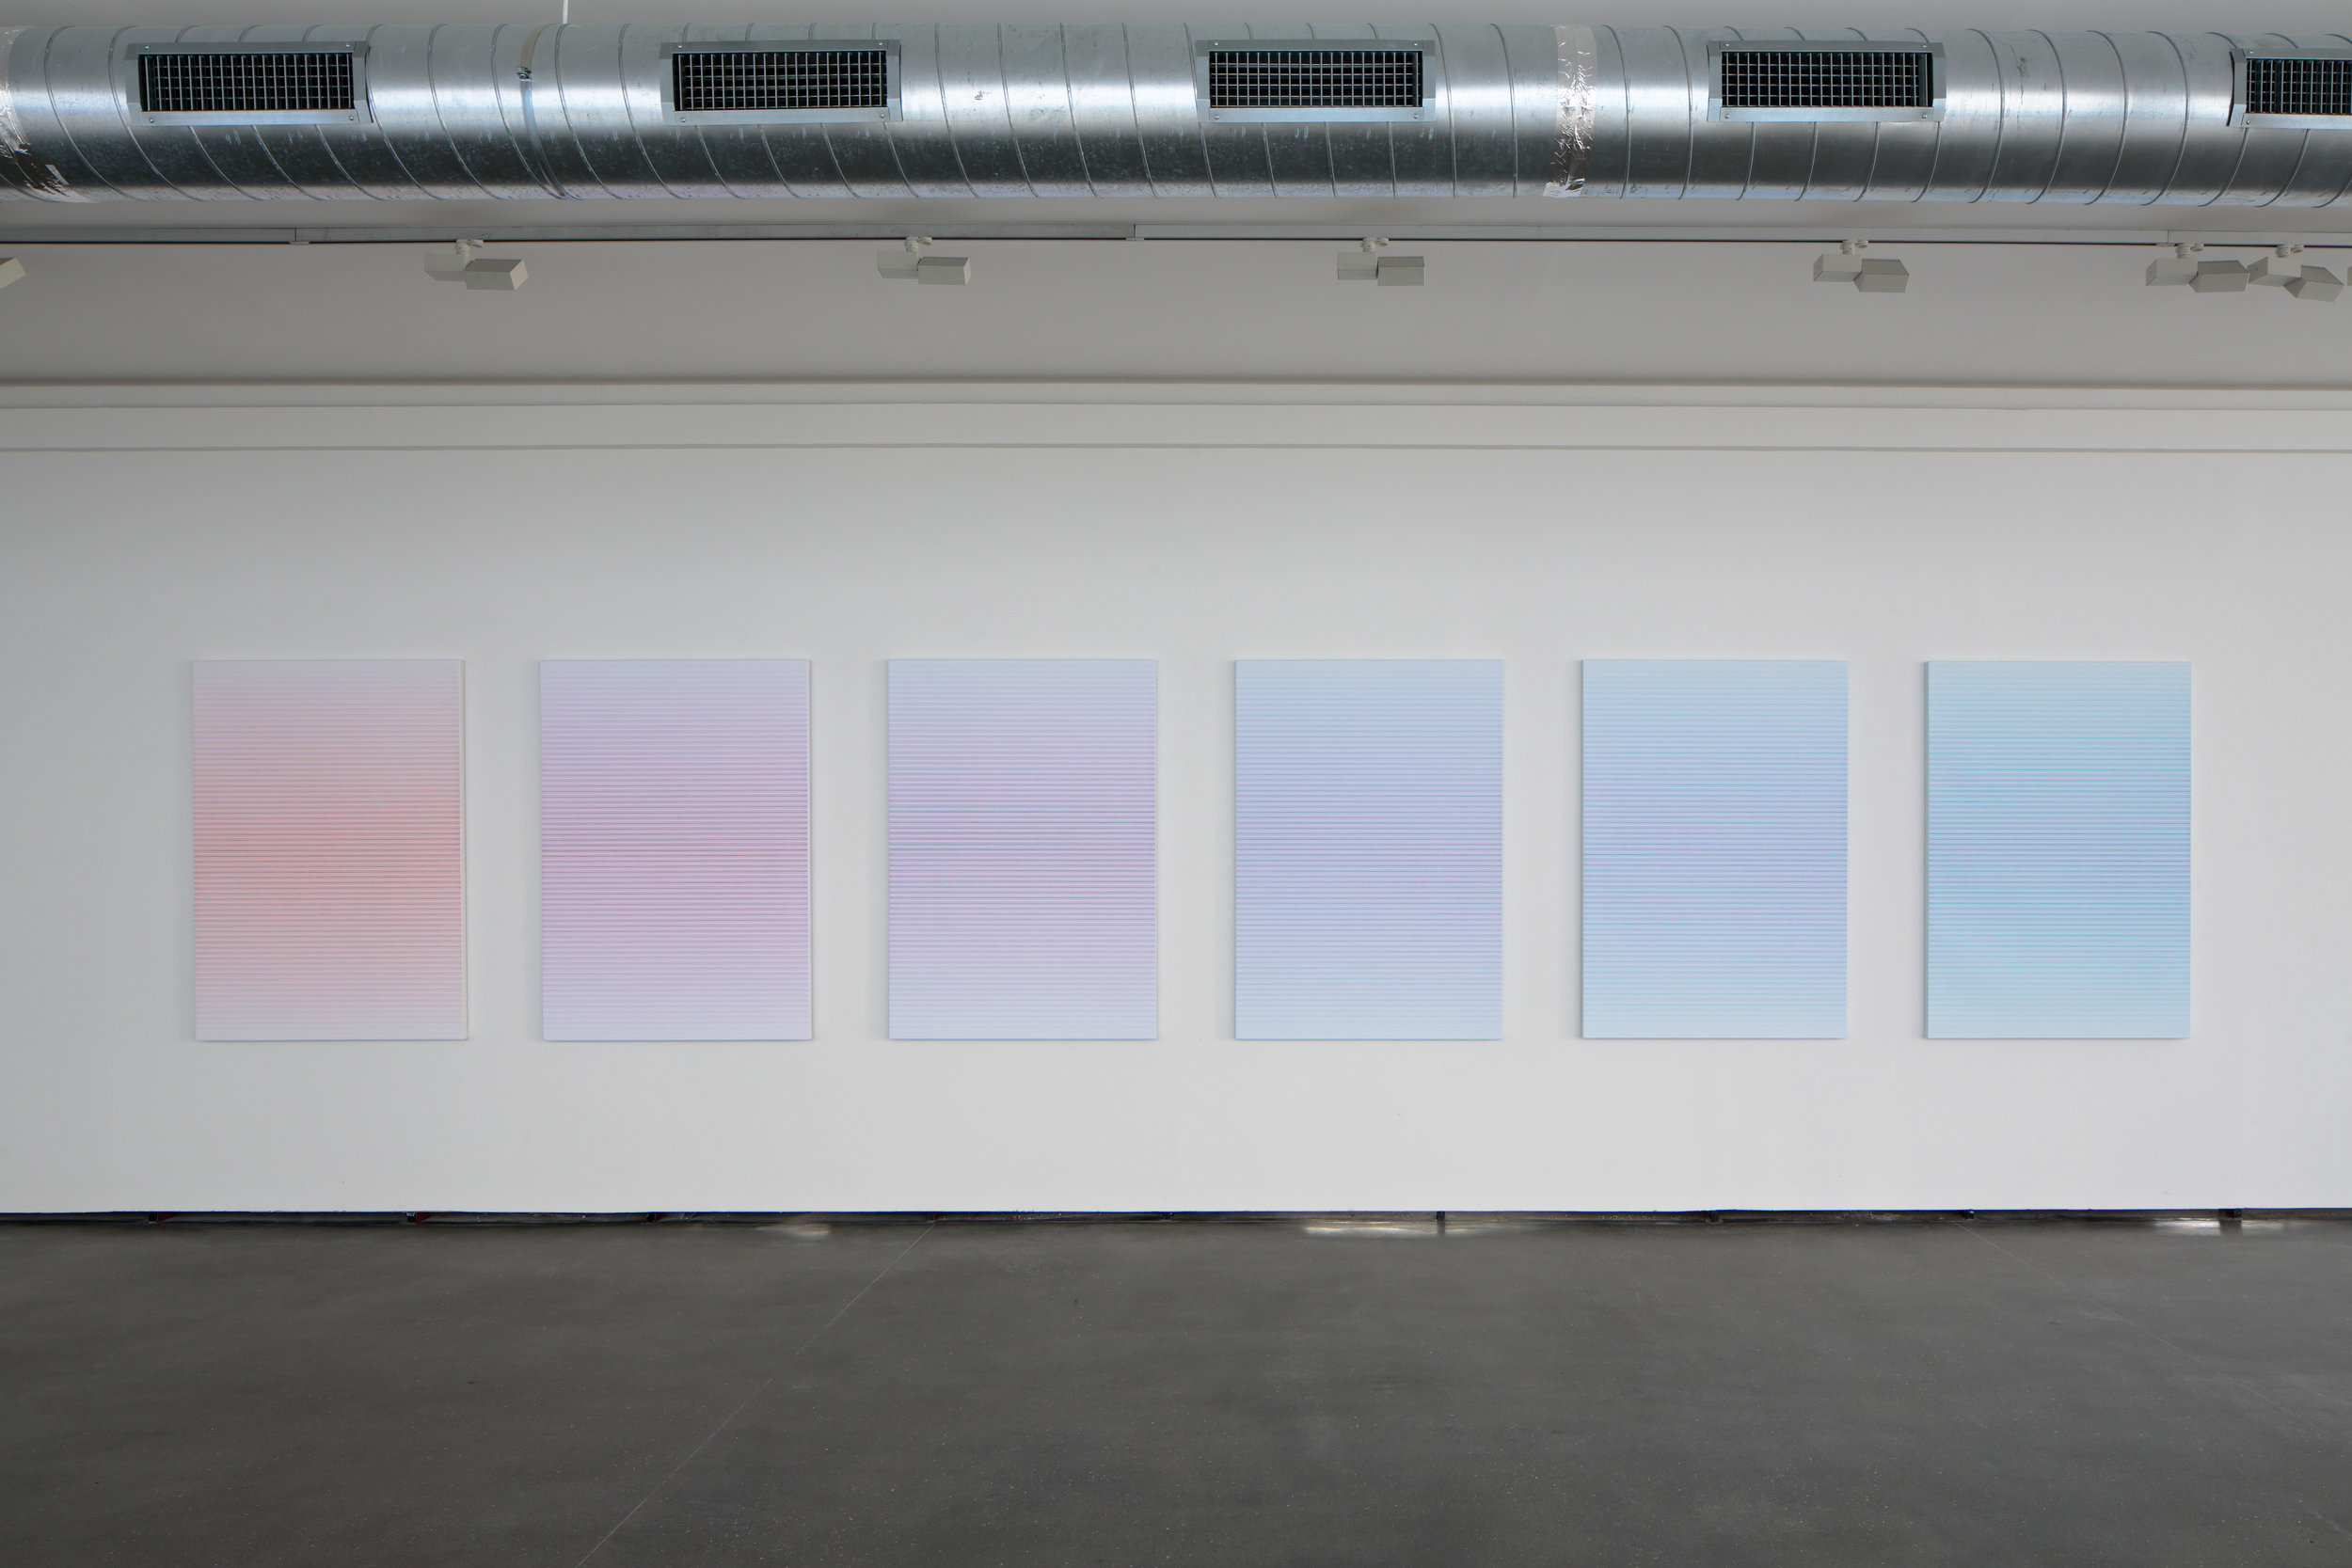  Jiří Matějů,  Six Stations  (polyptych), 2015, pigments and mixed media on canvas, 141 x 99 cm 